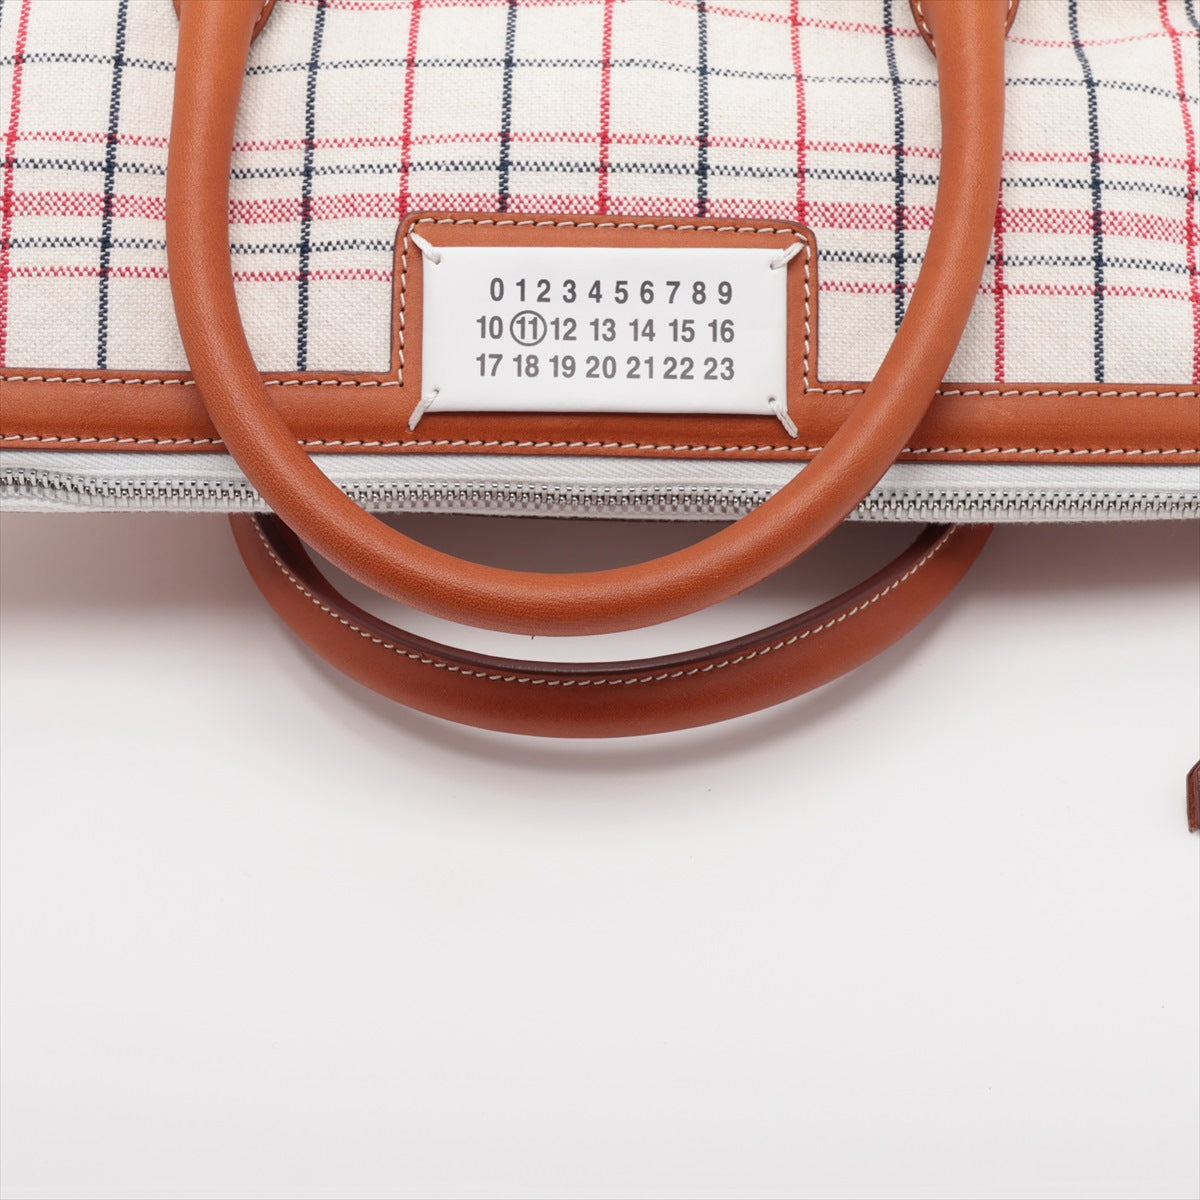 Maison Margiela 5AC Leather × Rubber 2way handbag White